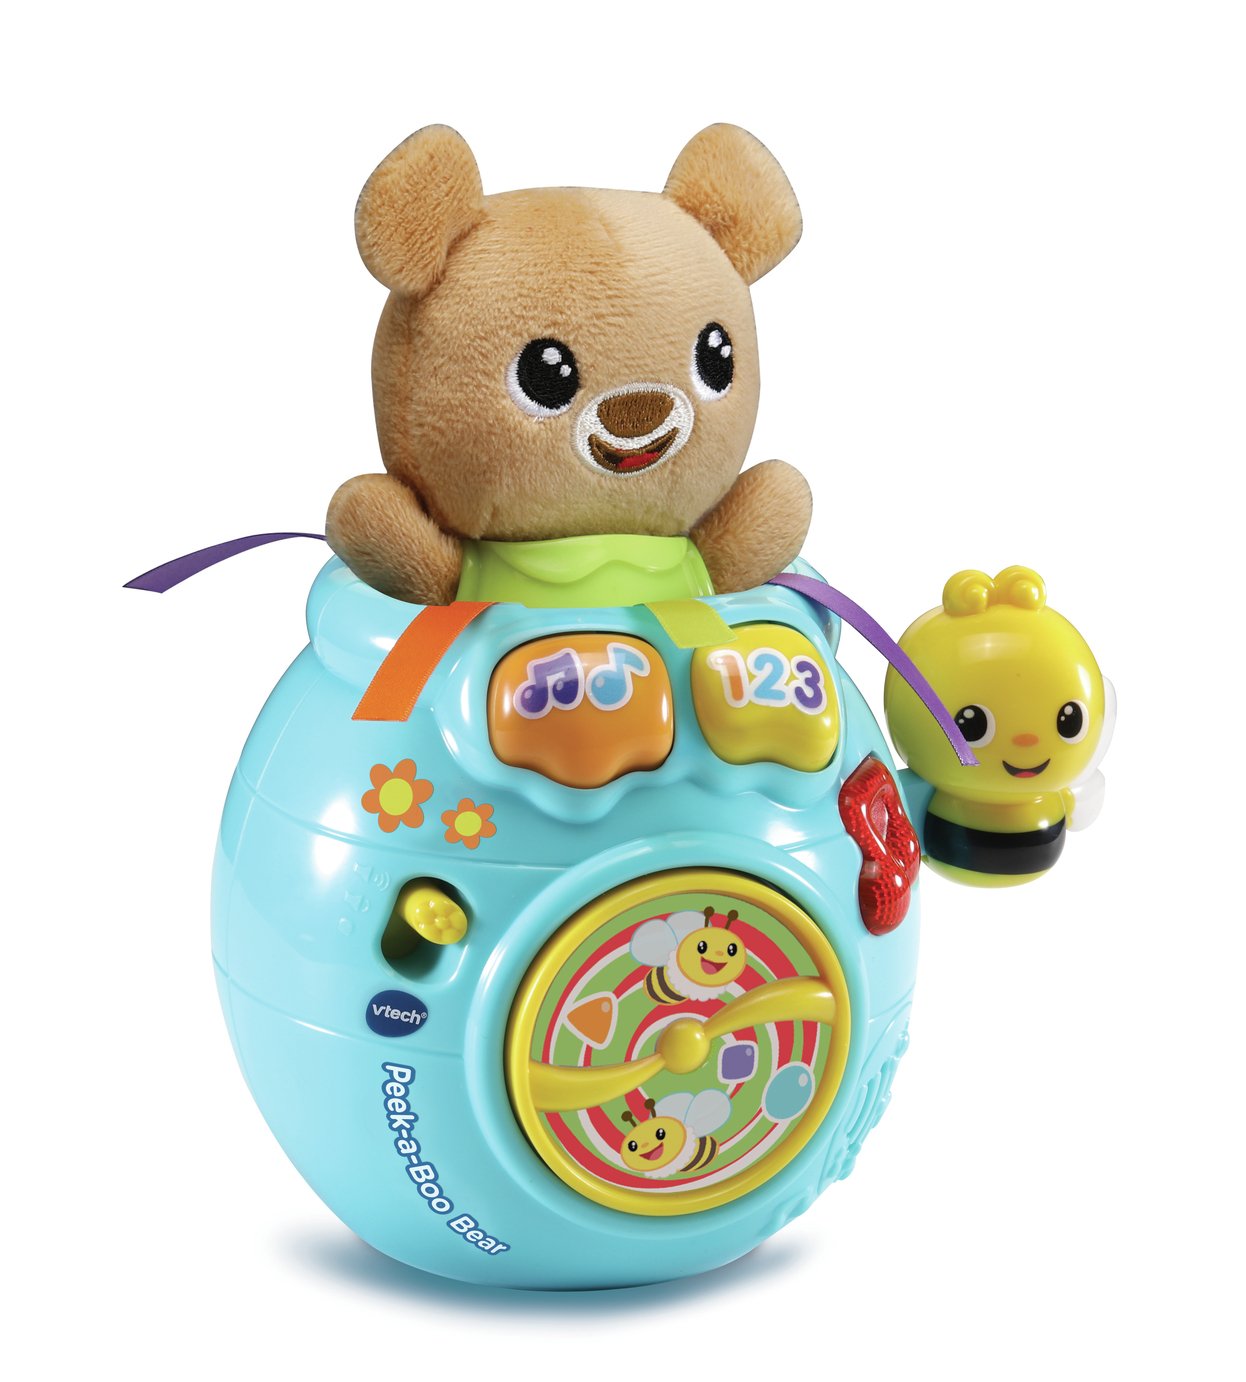 VTech Peek-a-Boo Bear Soft Toy Review